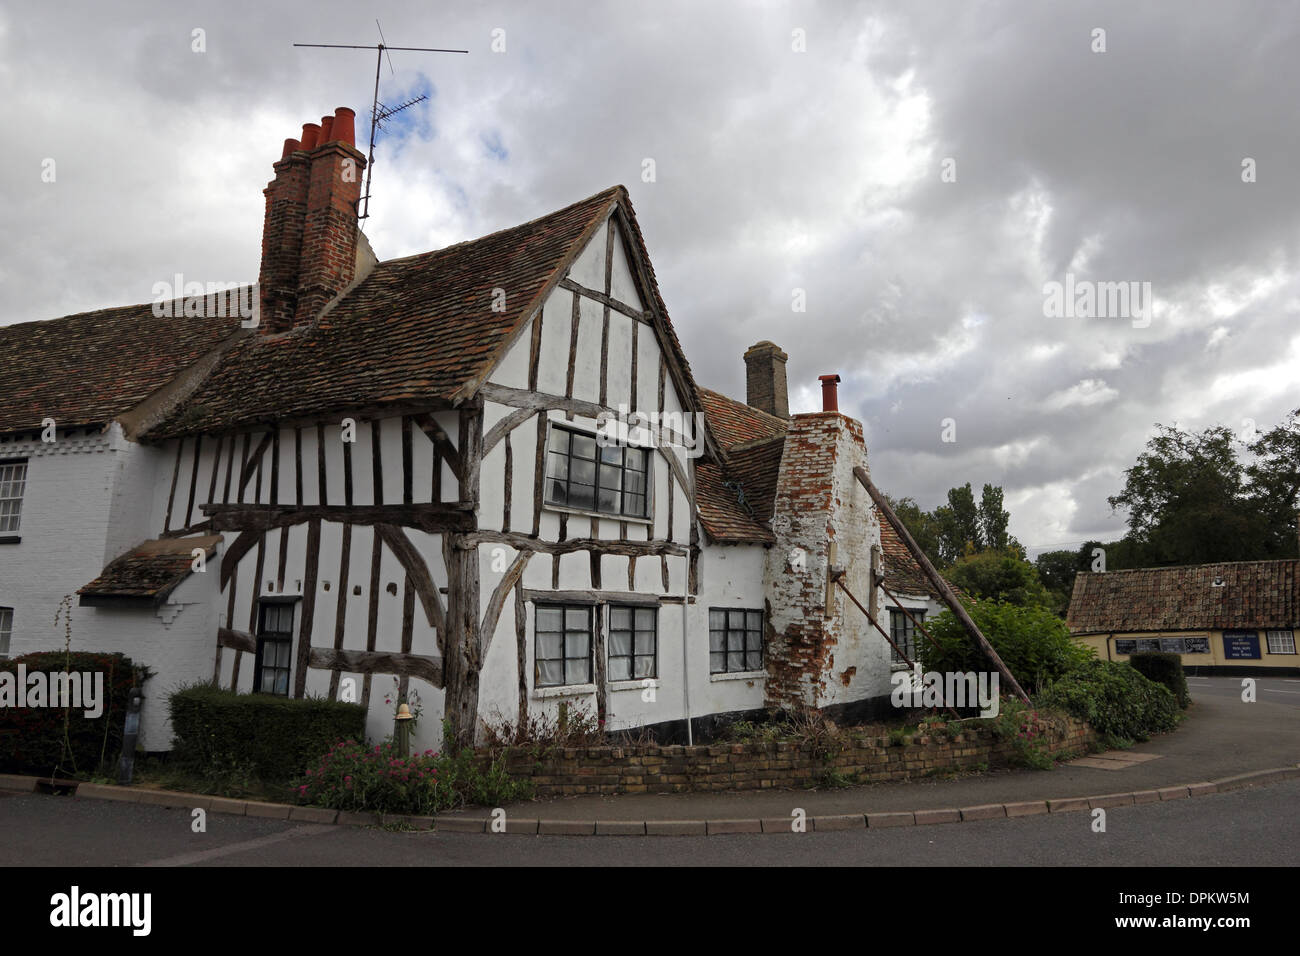 La maison à ossature de bois de style Tudor avec des problèmes structurels Banque D'Images